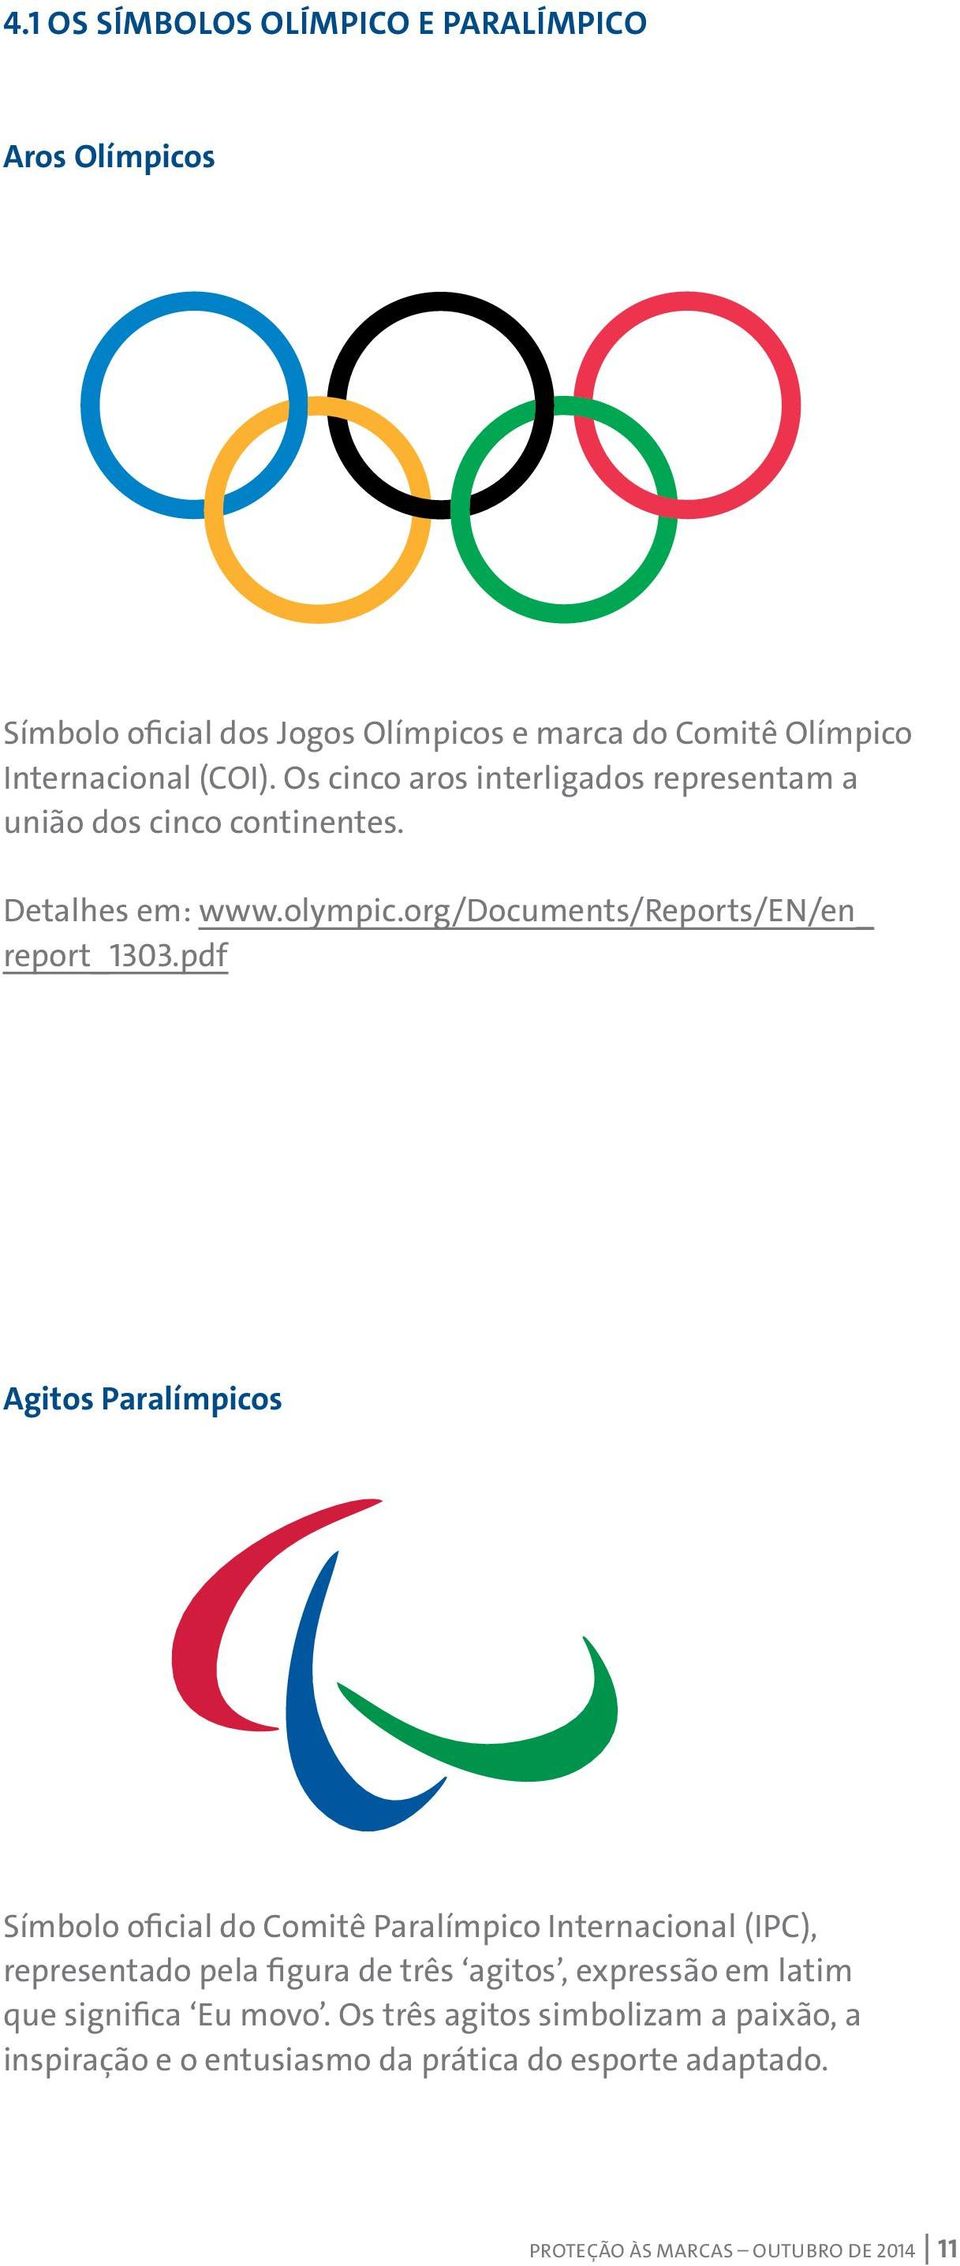 pdf Agitos Paralímpicos Símbolo oficial do Comitê Paralímpico Internacional (IPC), representado pela figura de três agitos, expressão em latim